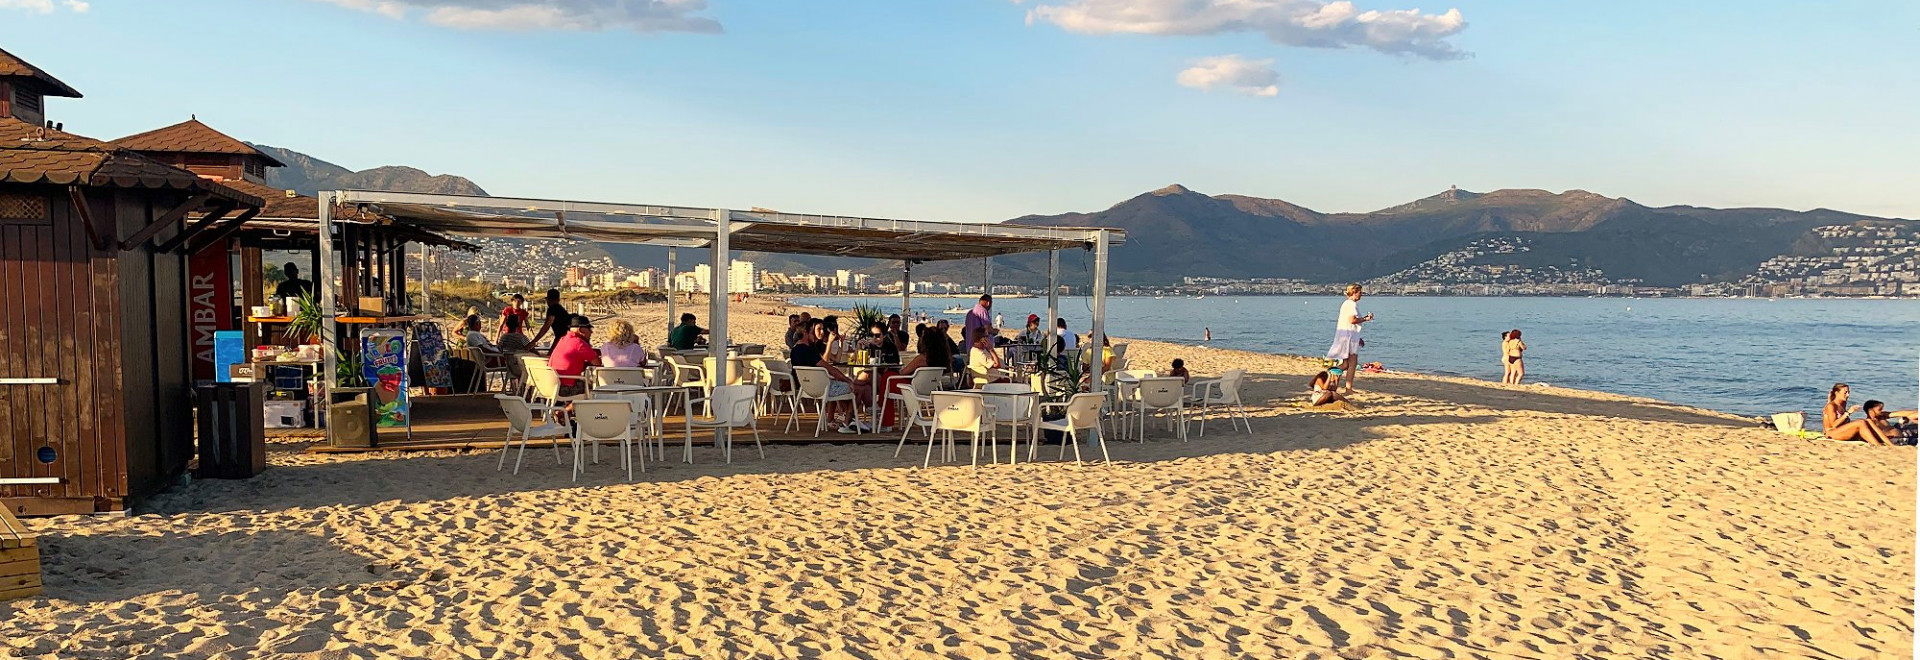 Restaurant sur la plage en Espagne